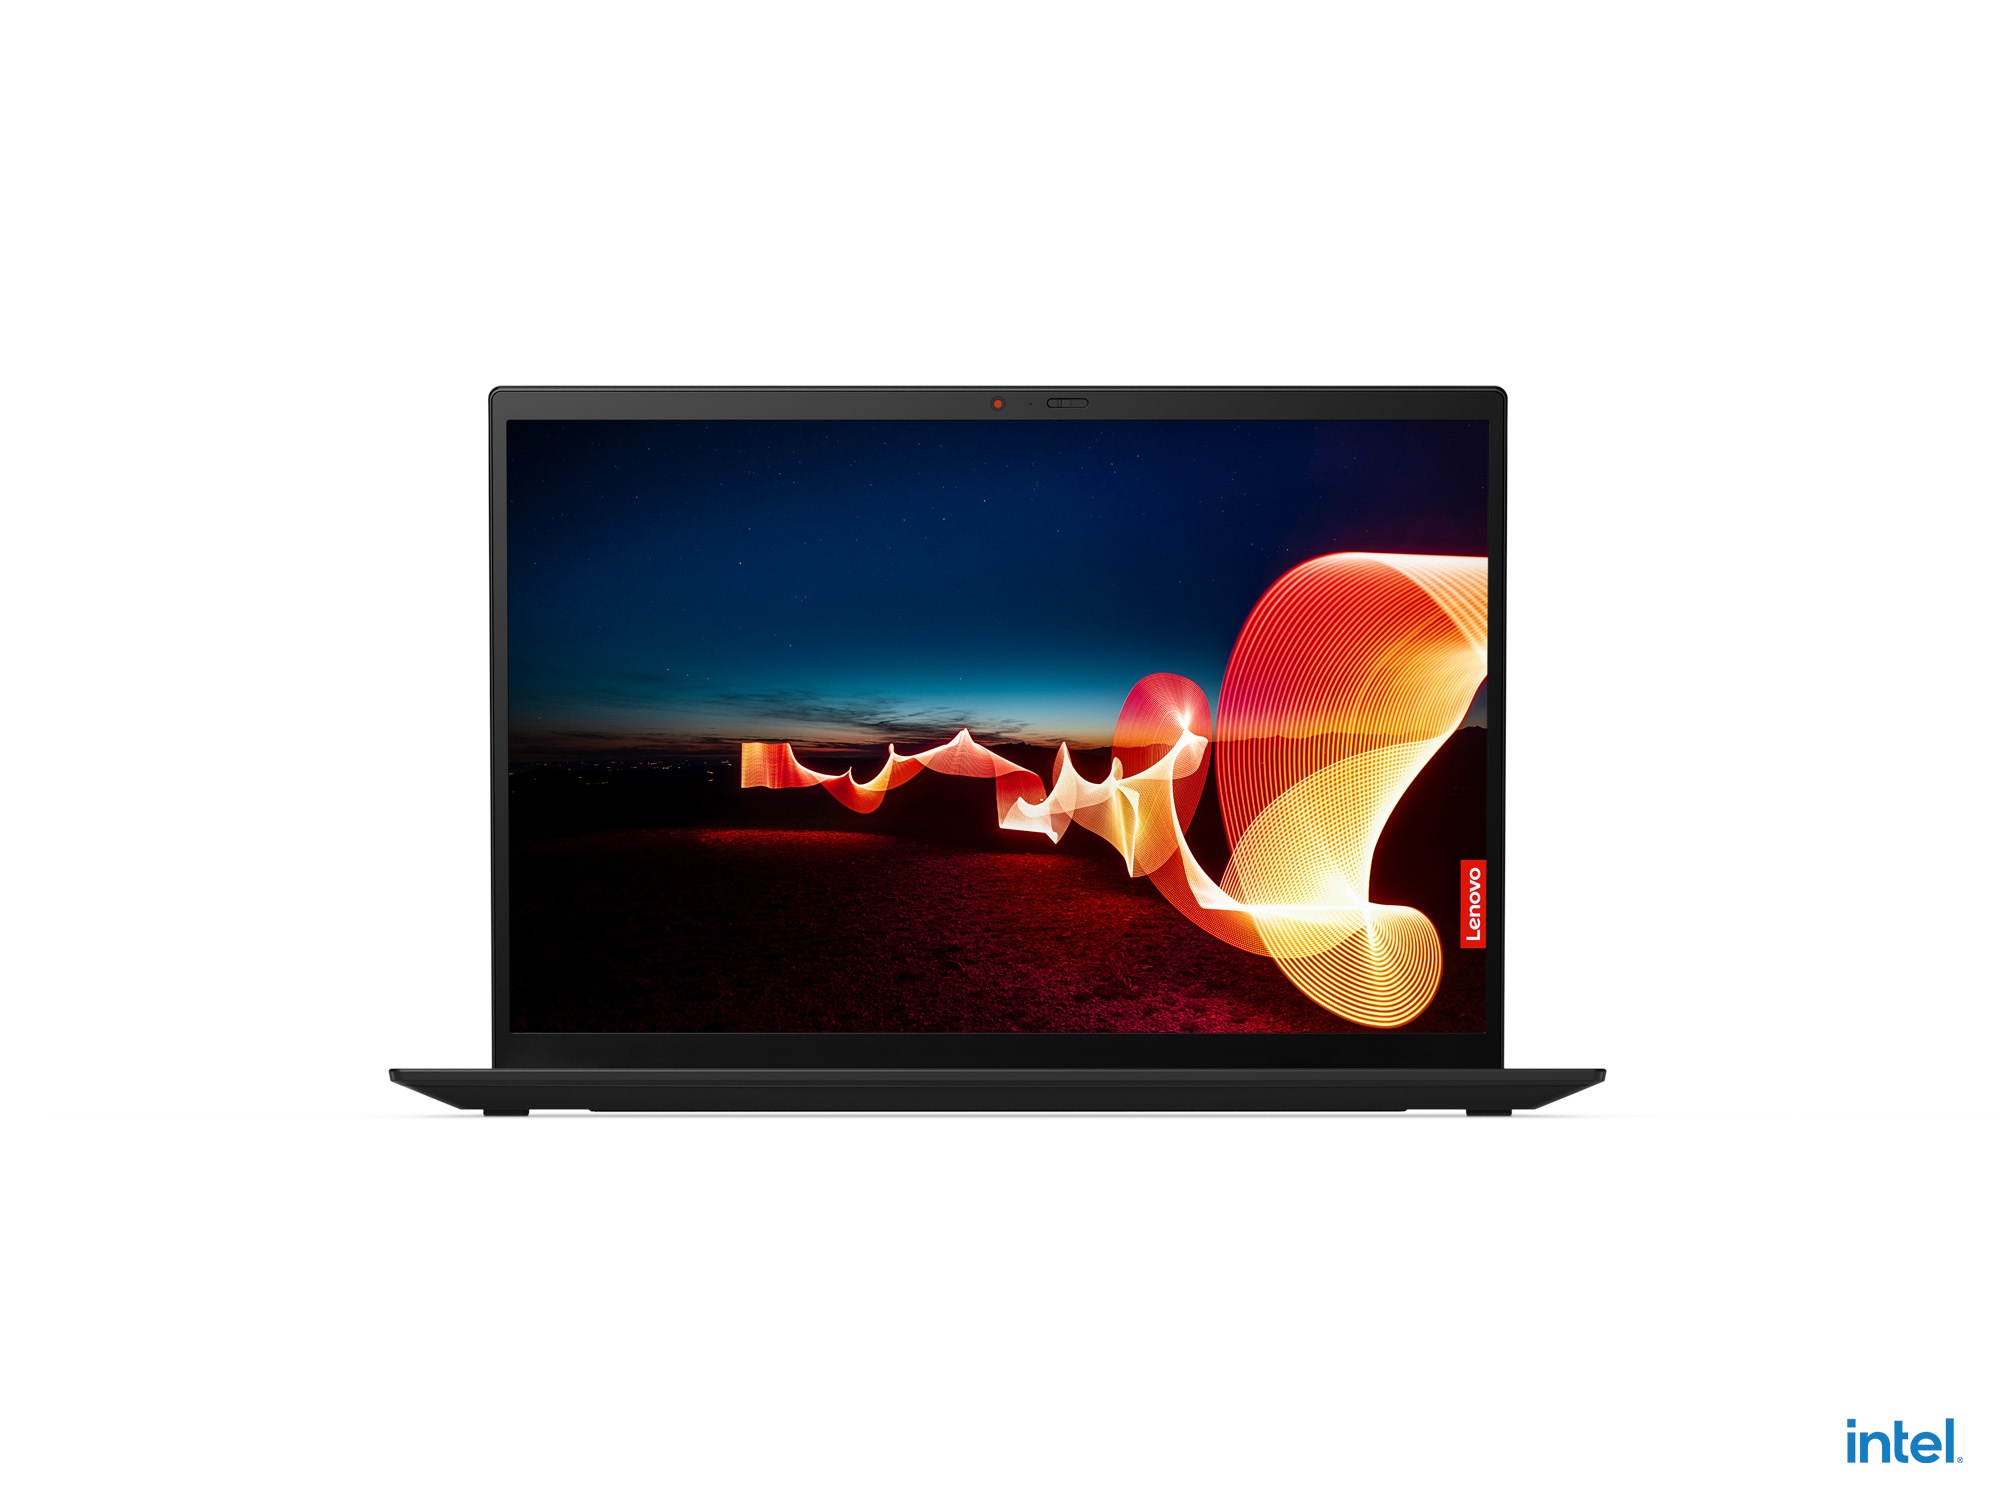 Lenovo ra mắt mẫu laptop doanh nhân ThinkPad X1 Carbon Gen 9 cao cấp nhất